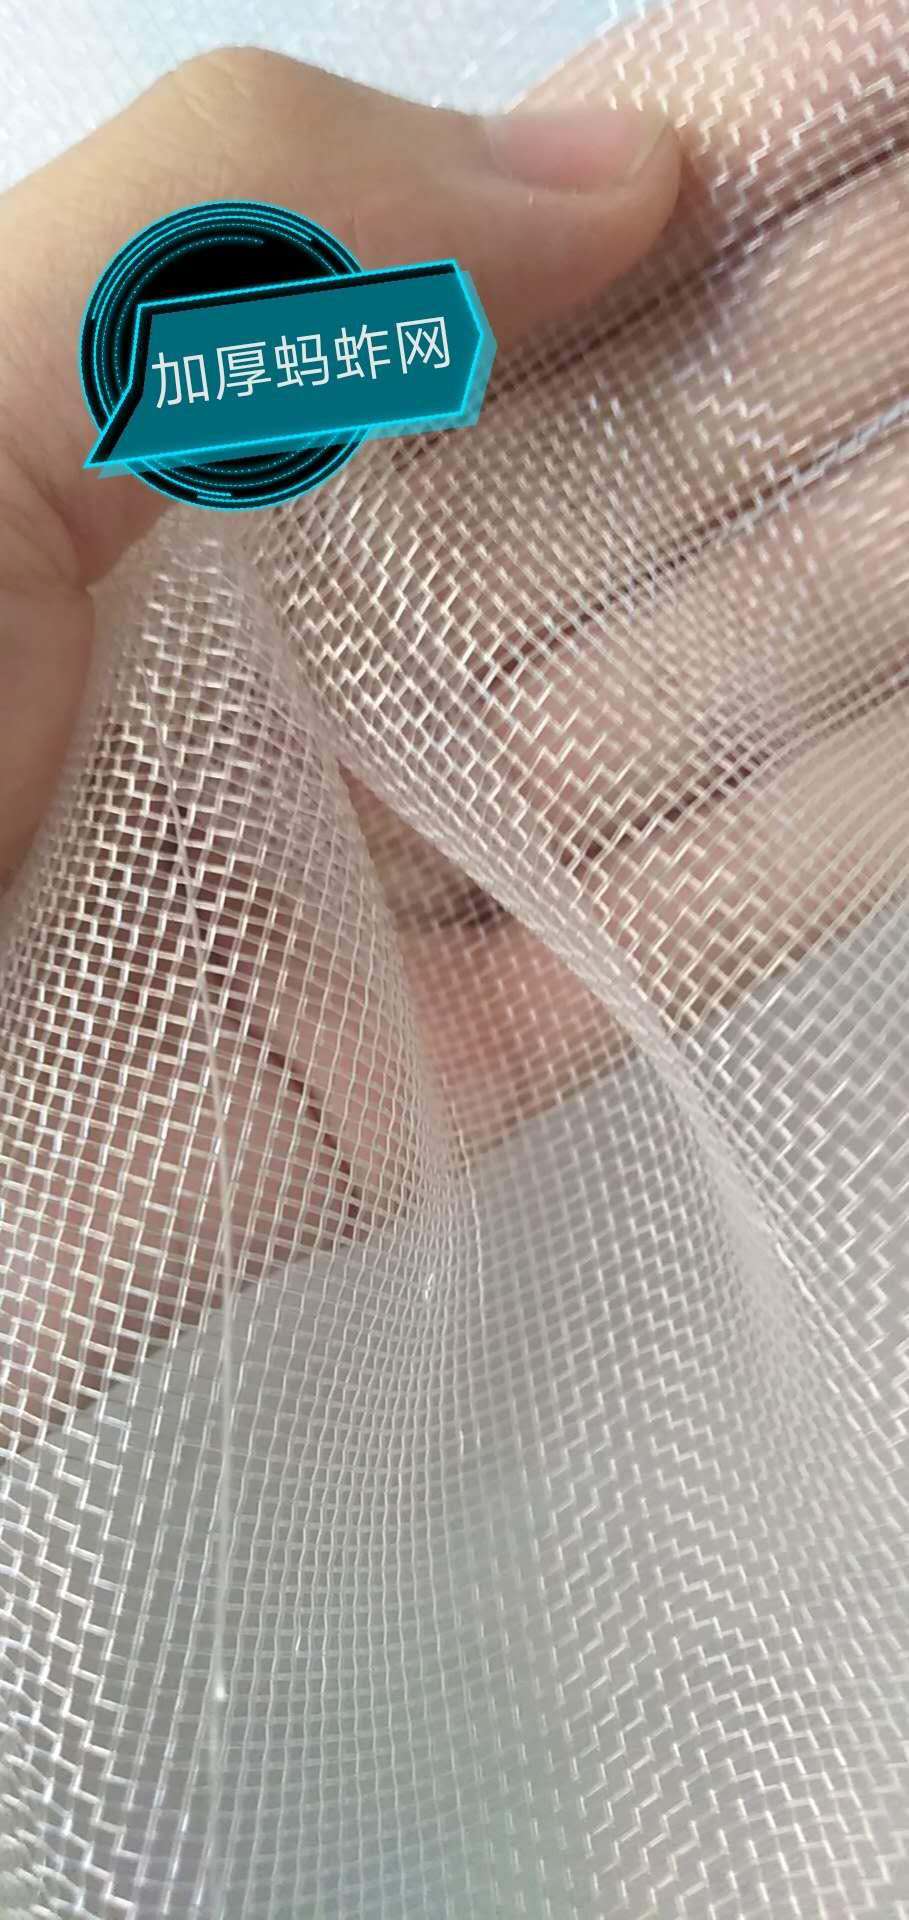 抗拉耐磨的加厚养殖网拱形蚂蚱网罩定做免费装拉链